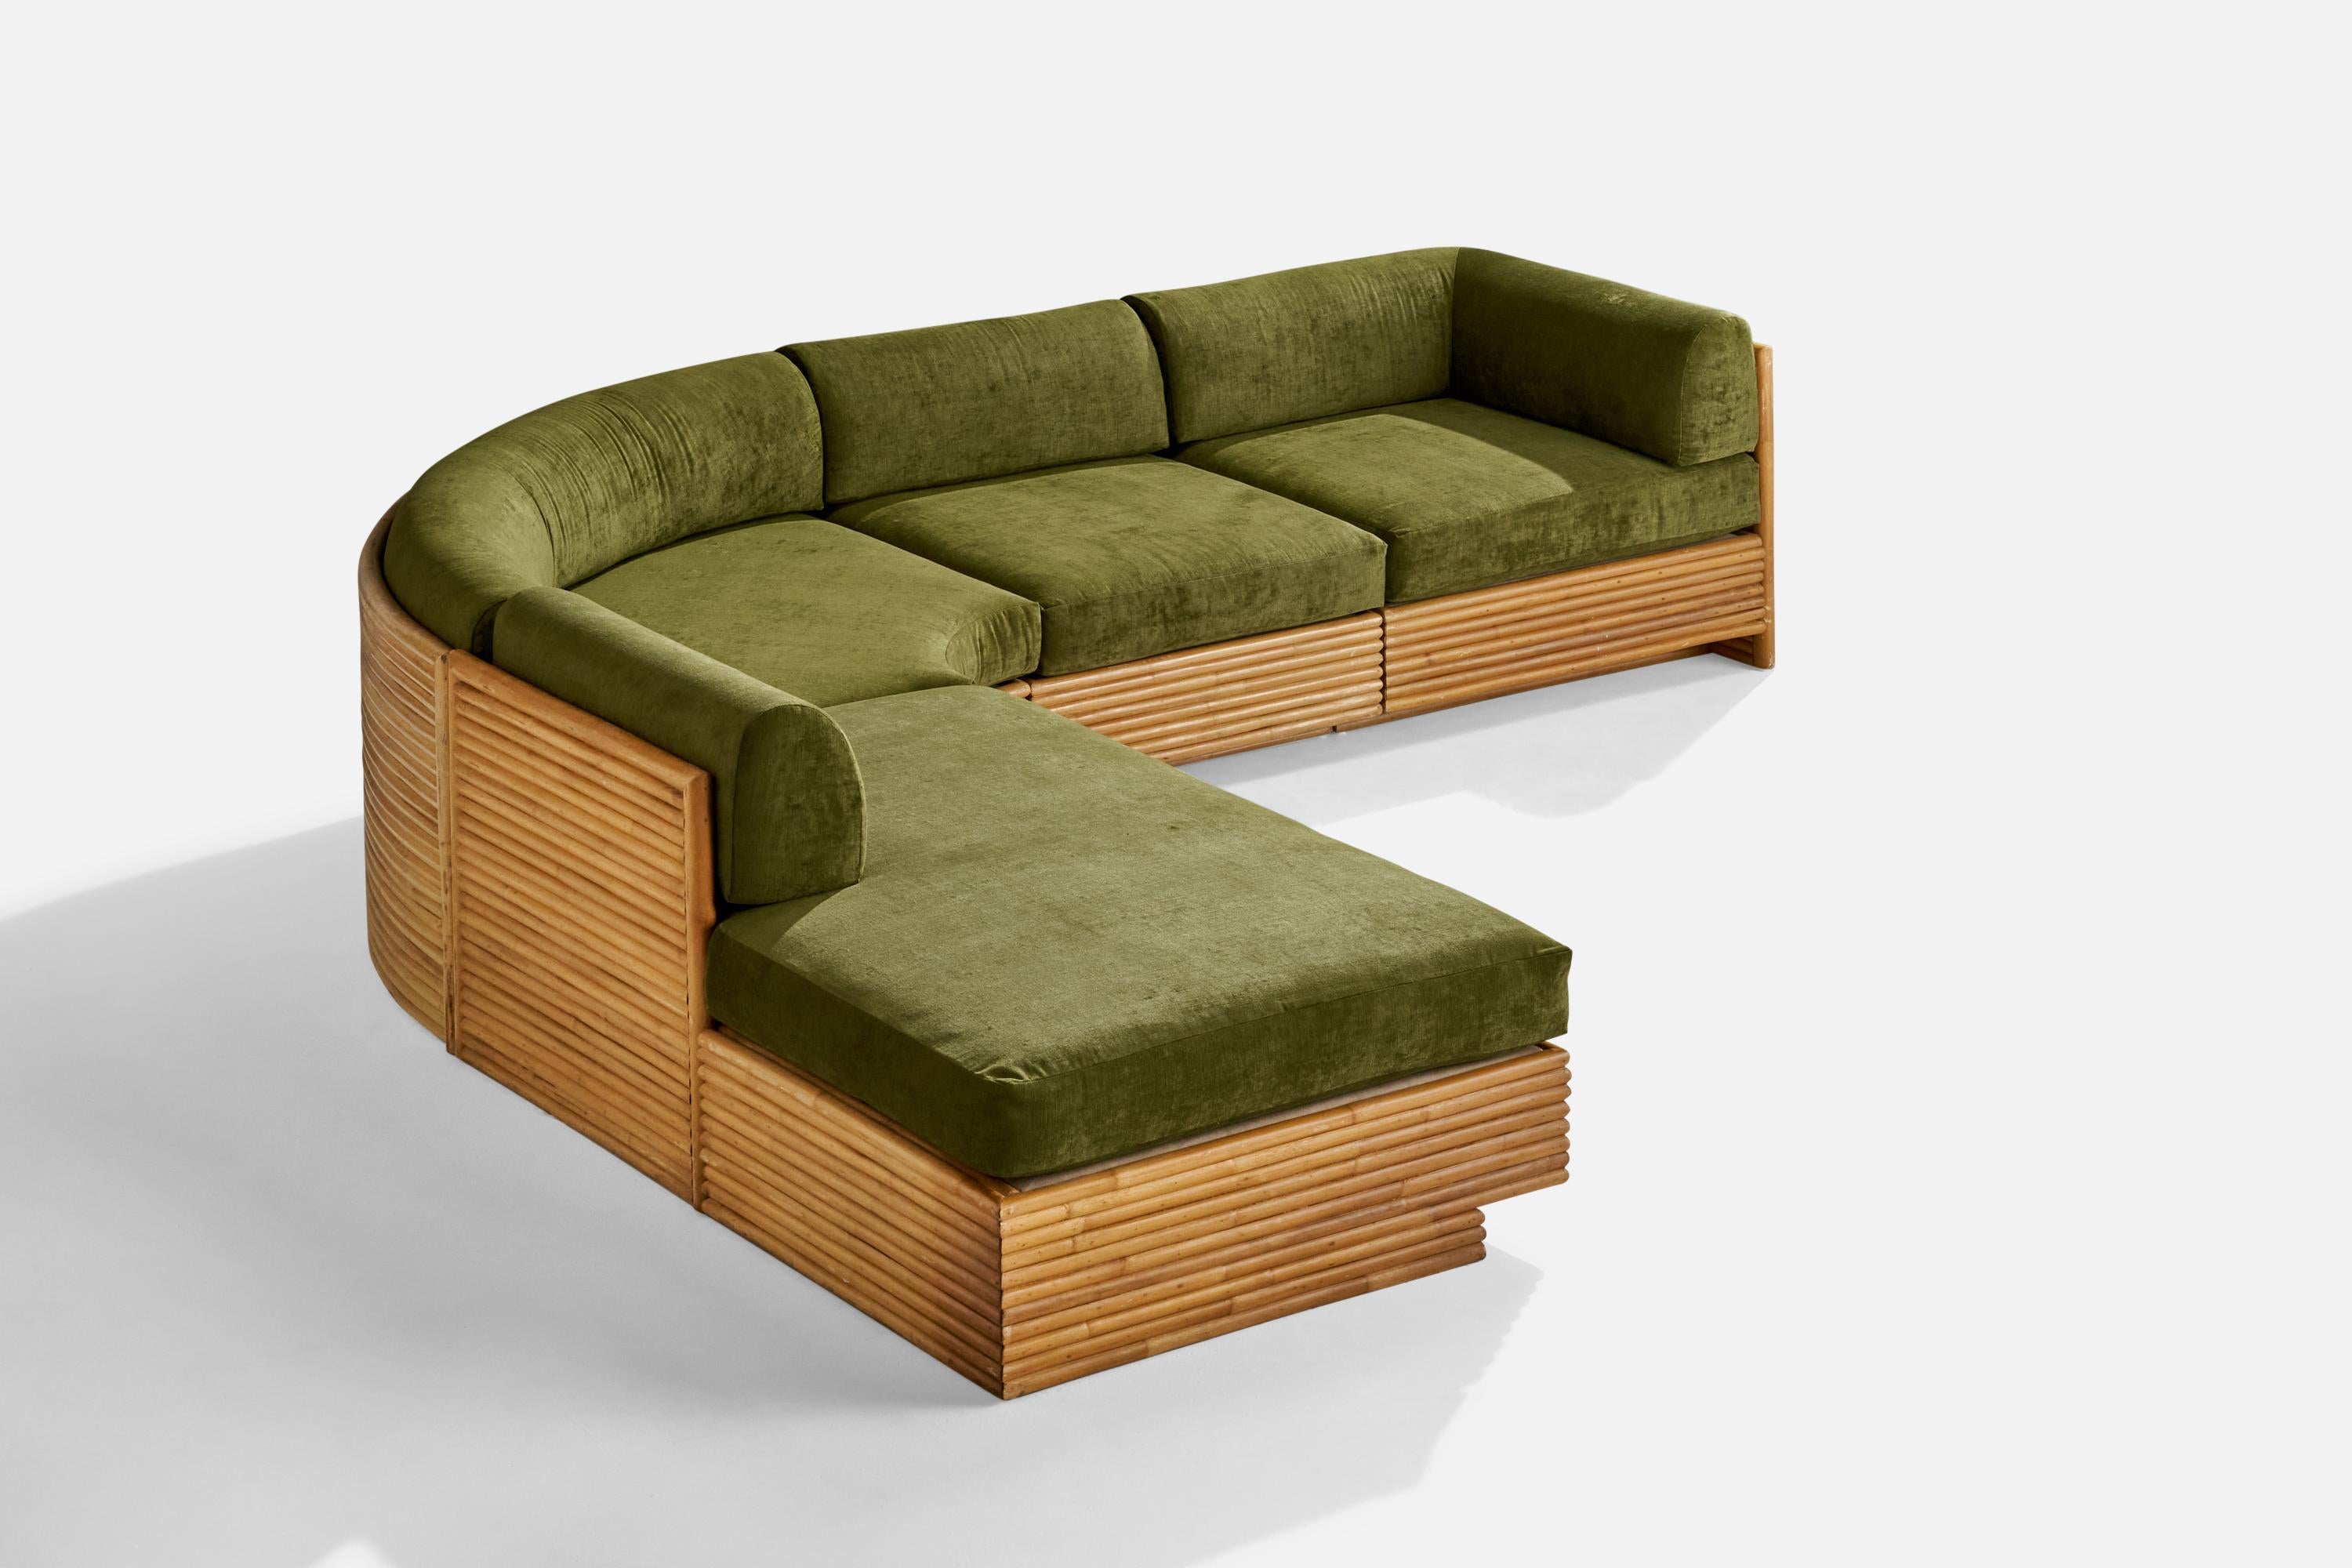 Canapé sectionnel en bambou et velours vert conçu et produit par Directional Furniture, États-Unis, années 1970.

Hauteur d'assise 18